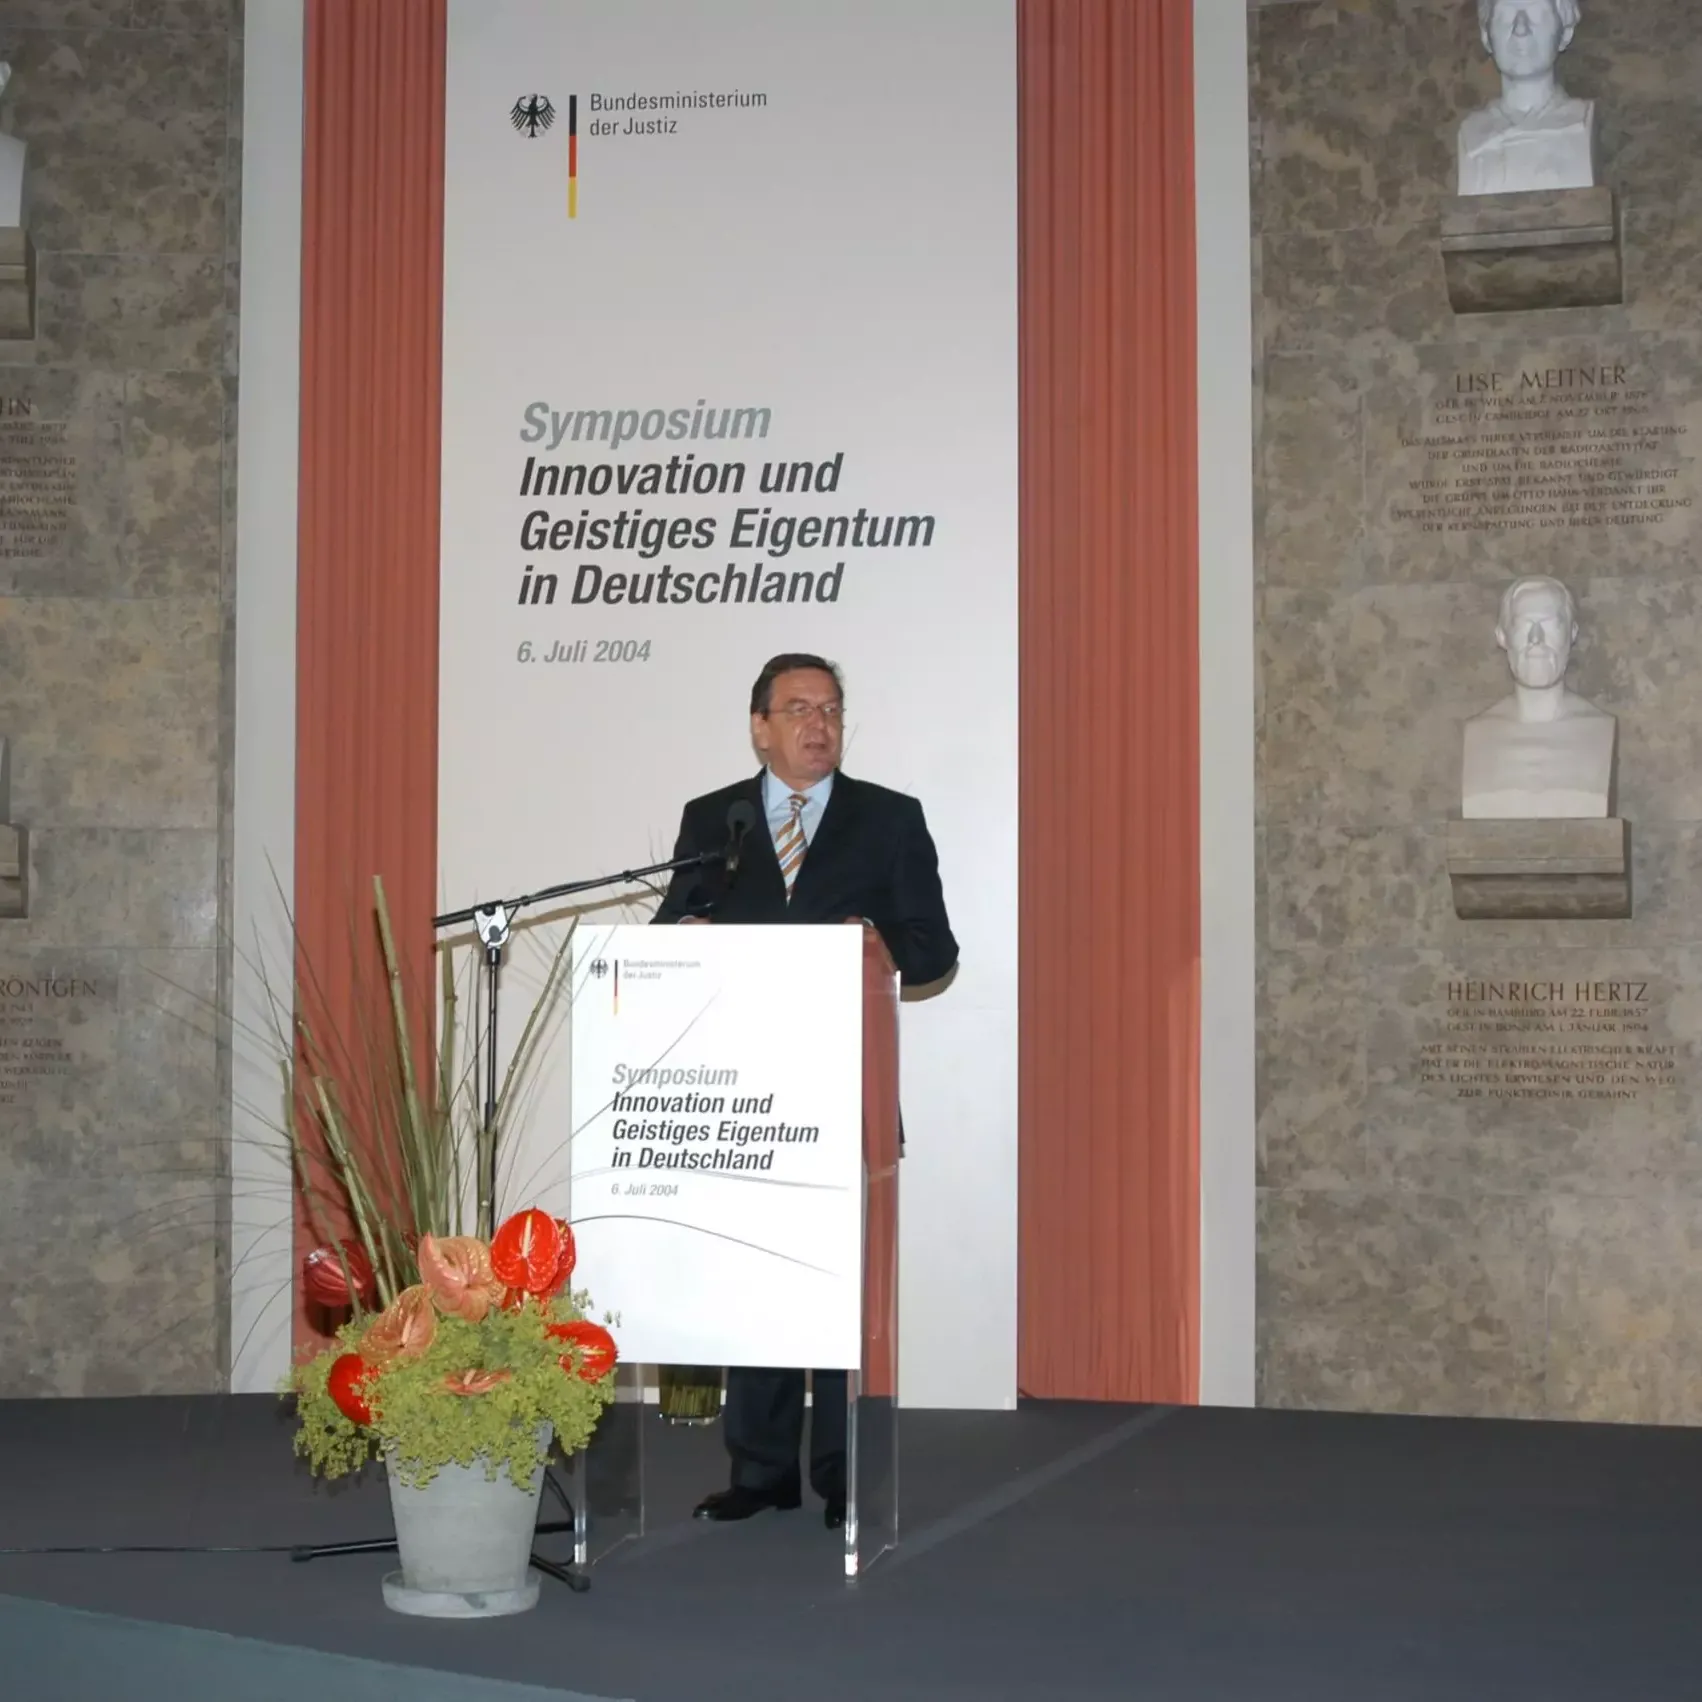 Deutsche Bundesregierung event PR Agentur München